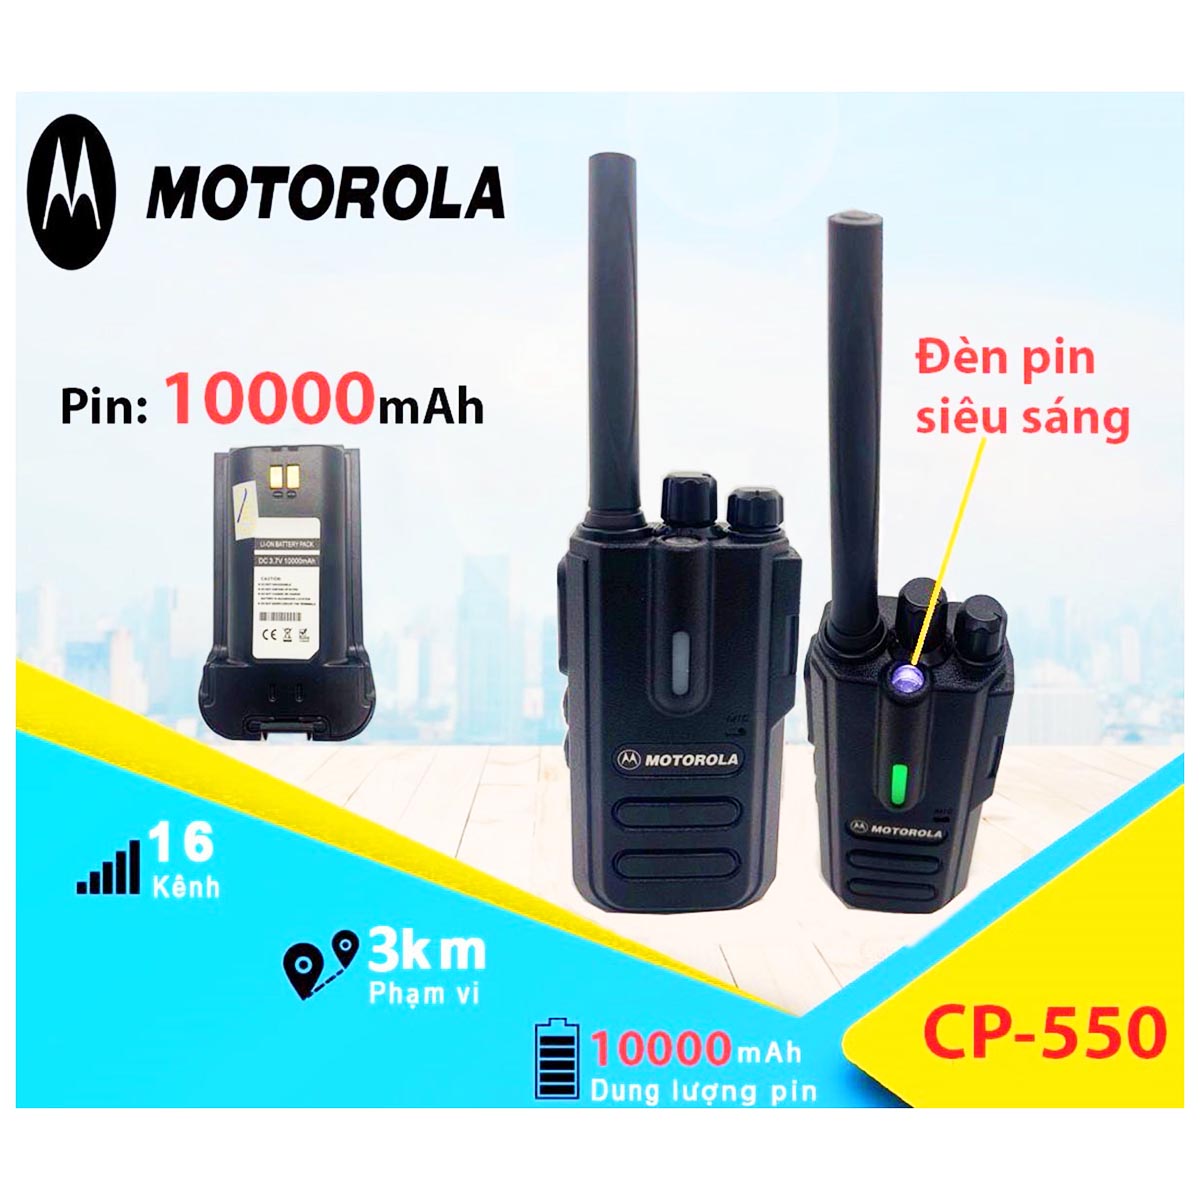 Bộ đàm Motorola CP-550. Sản phẩm mới, công nghệ mới, dung lượng pin khủng – Hàng nhập khẩu